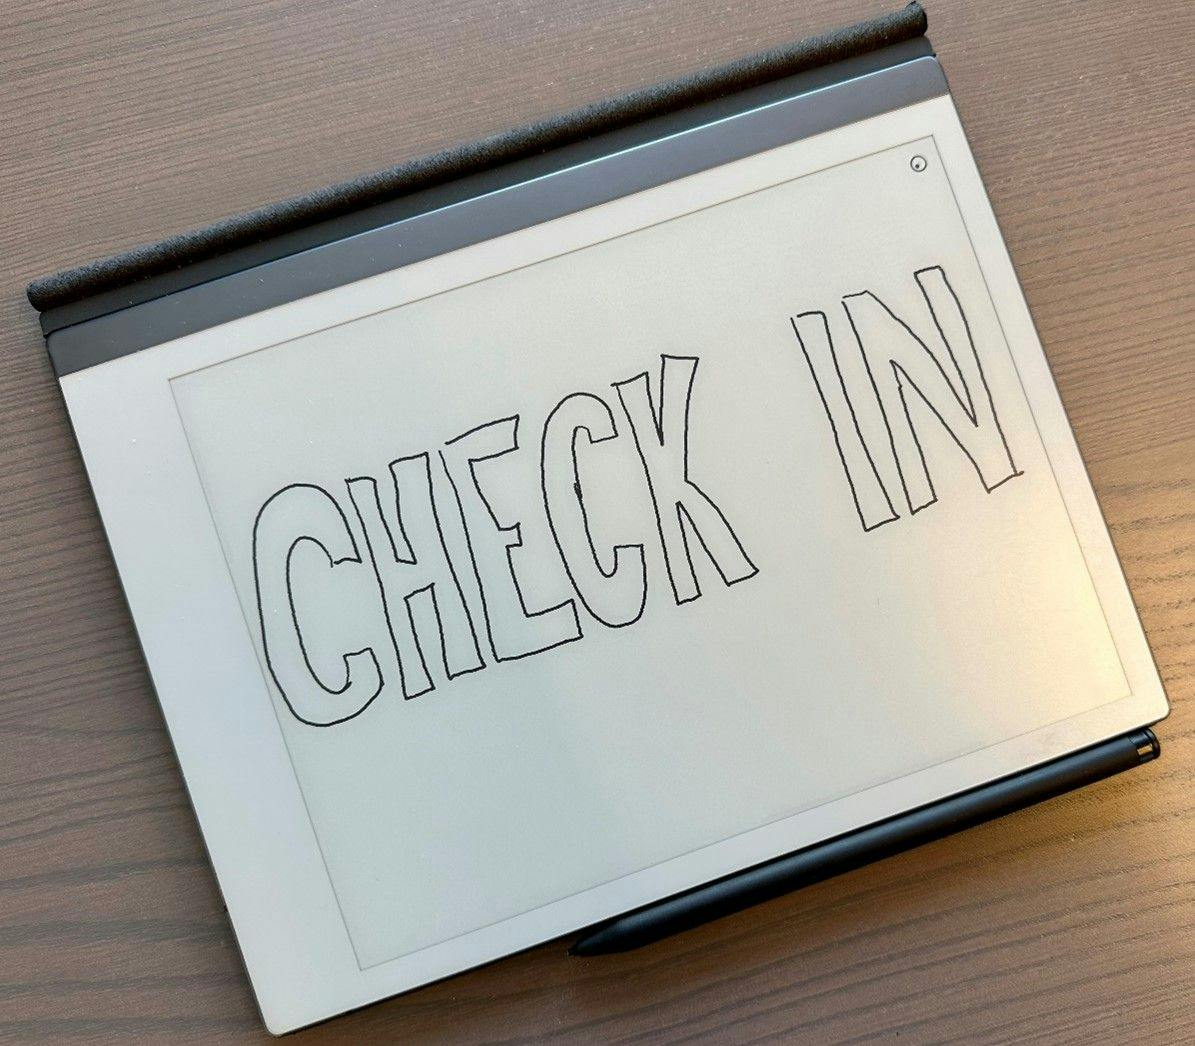 Teksten "Check-in" er skrevet med mørk tekst på en tablet